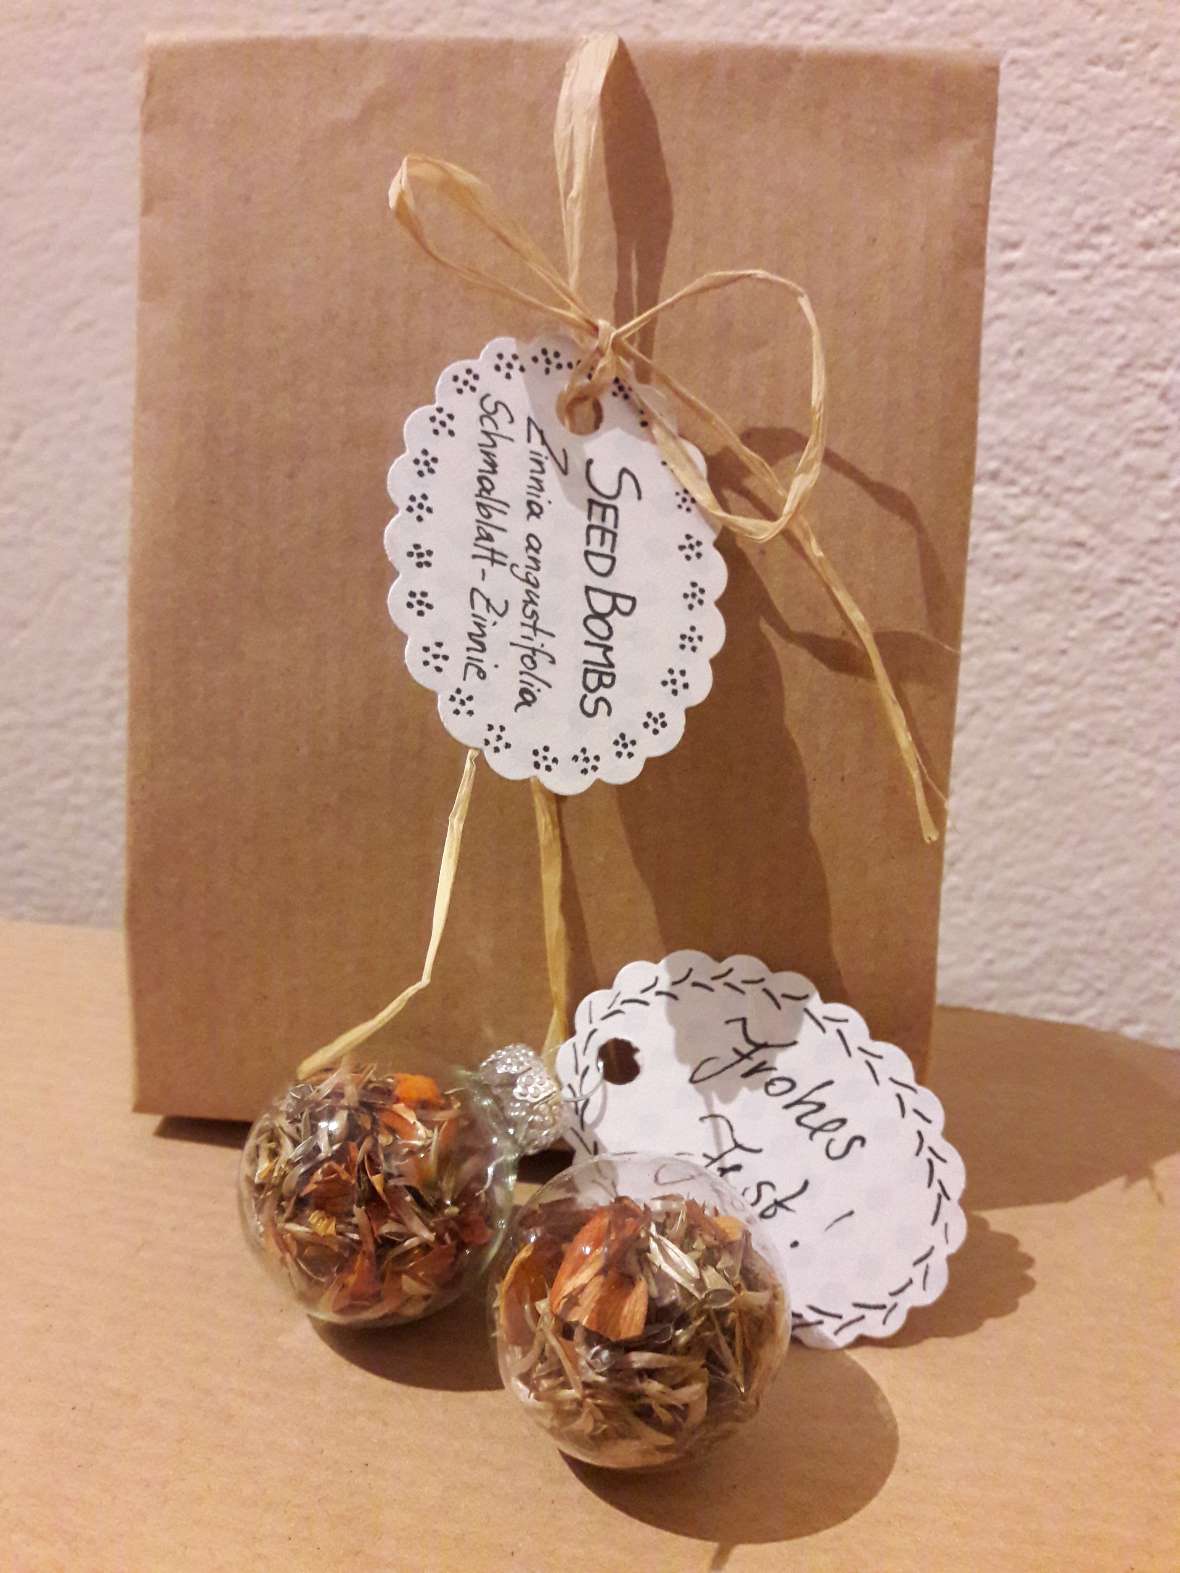 Seed-Bombs im selbstgemachten Papiersäckchen mit Geschenkanhänger und die fertigen Christbaumkugeln mit Samen und orangen Blütenblättern von Zinnia angustifolia